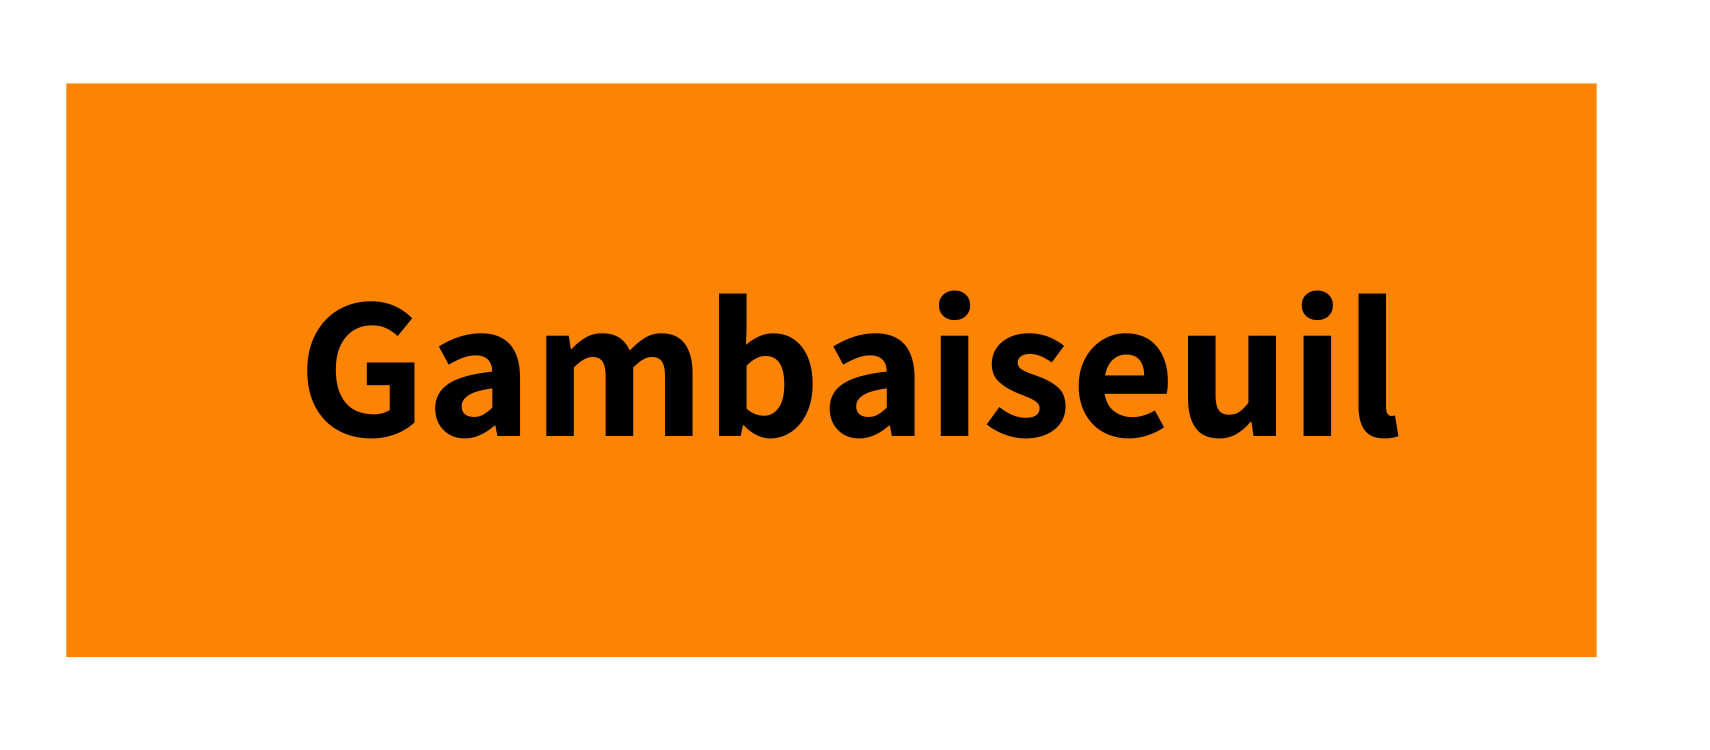 Gambaiseuil